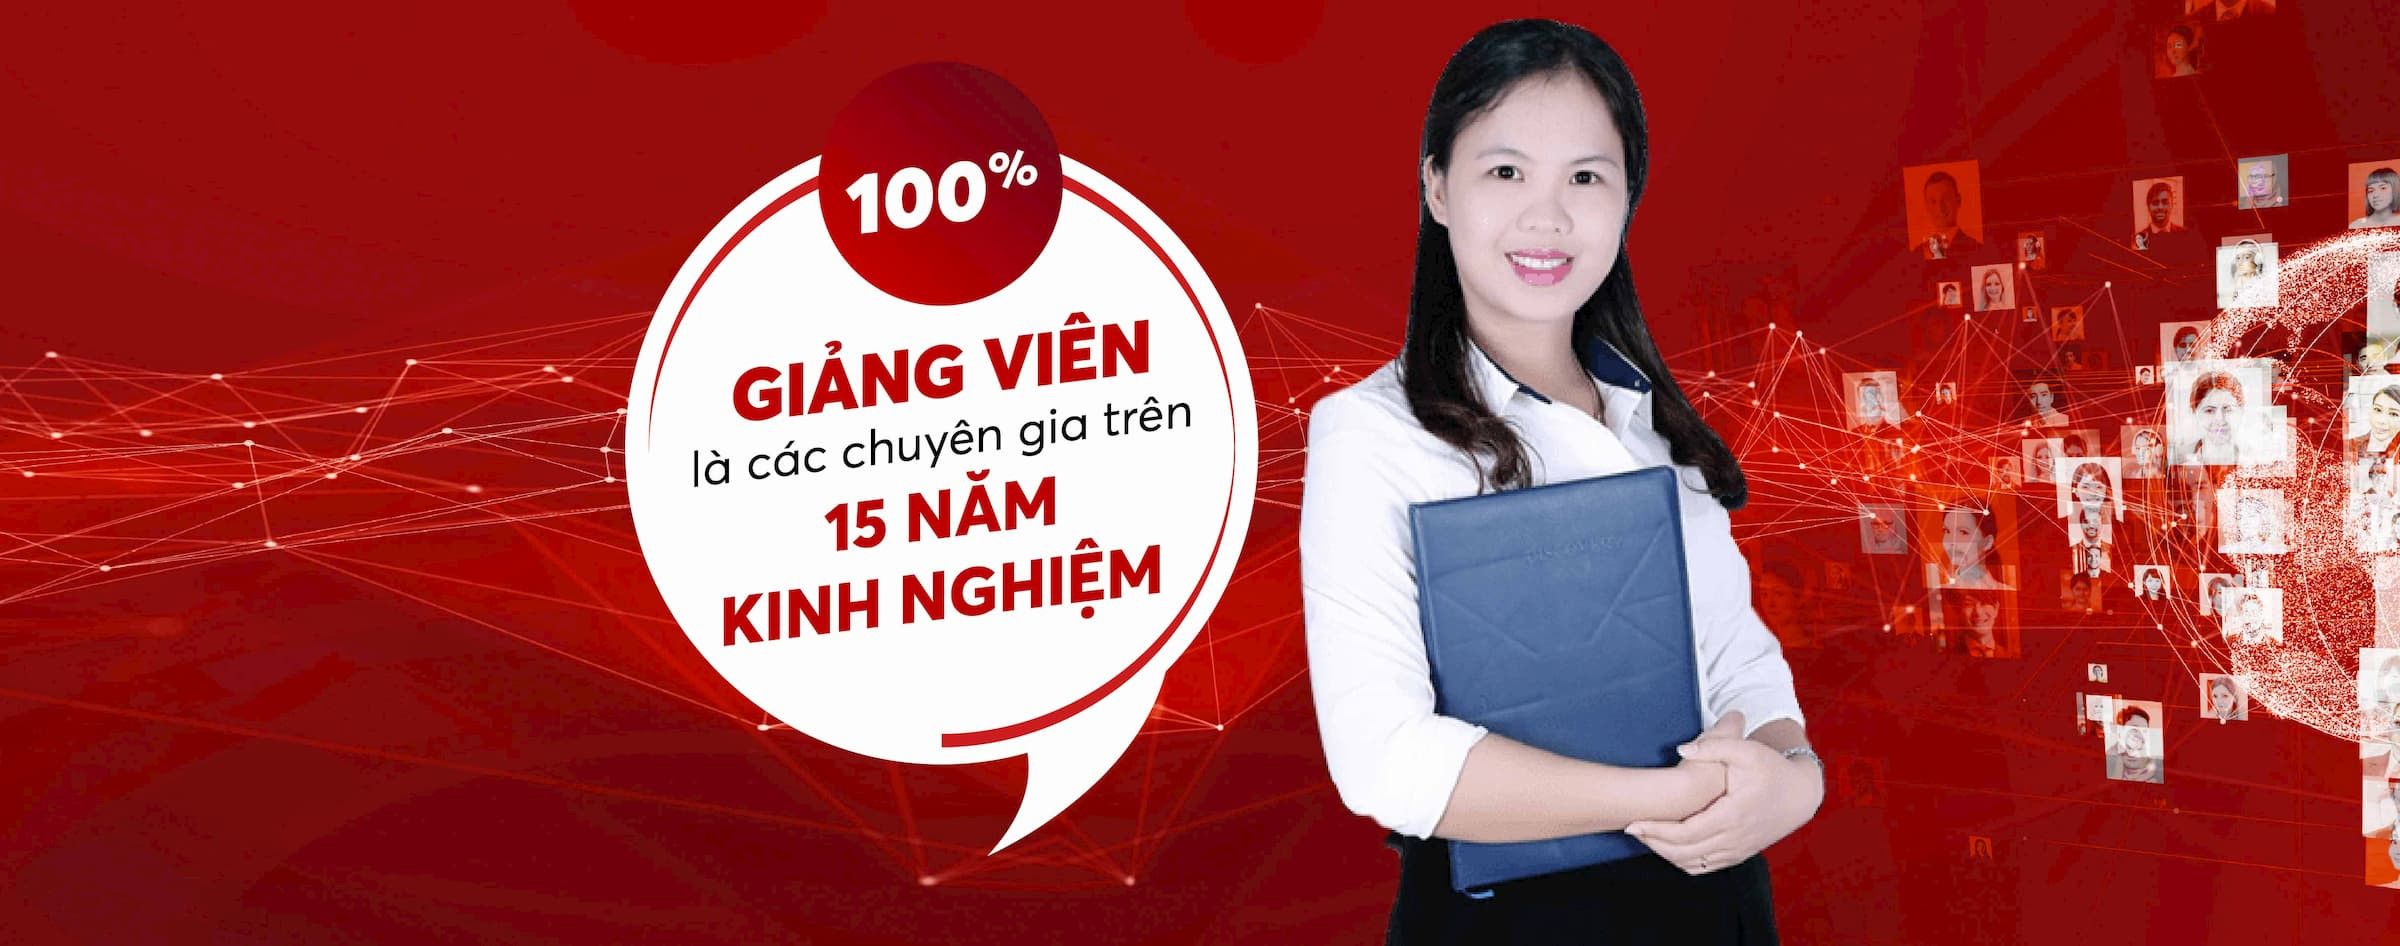 Trung tâm đào tạo giáo dục Việt Nam